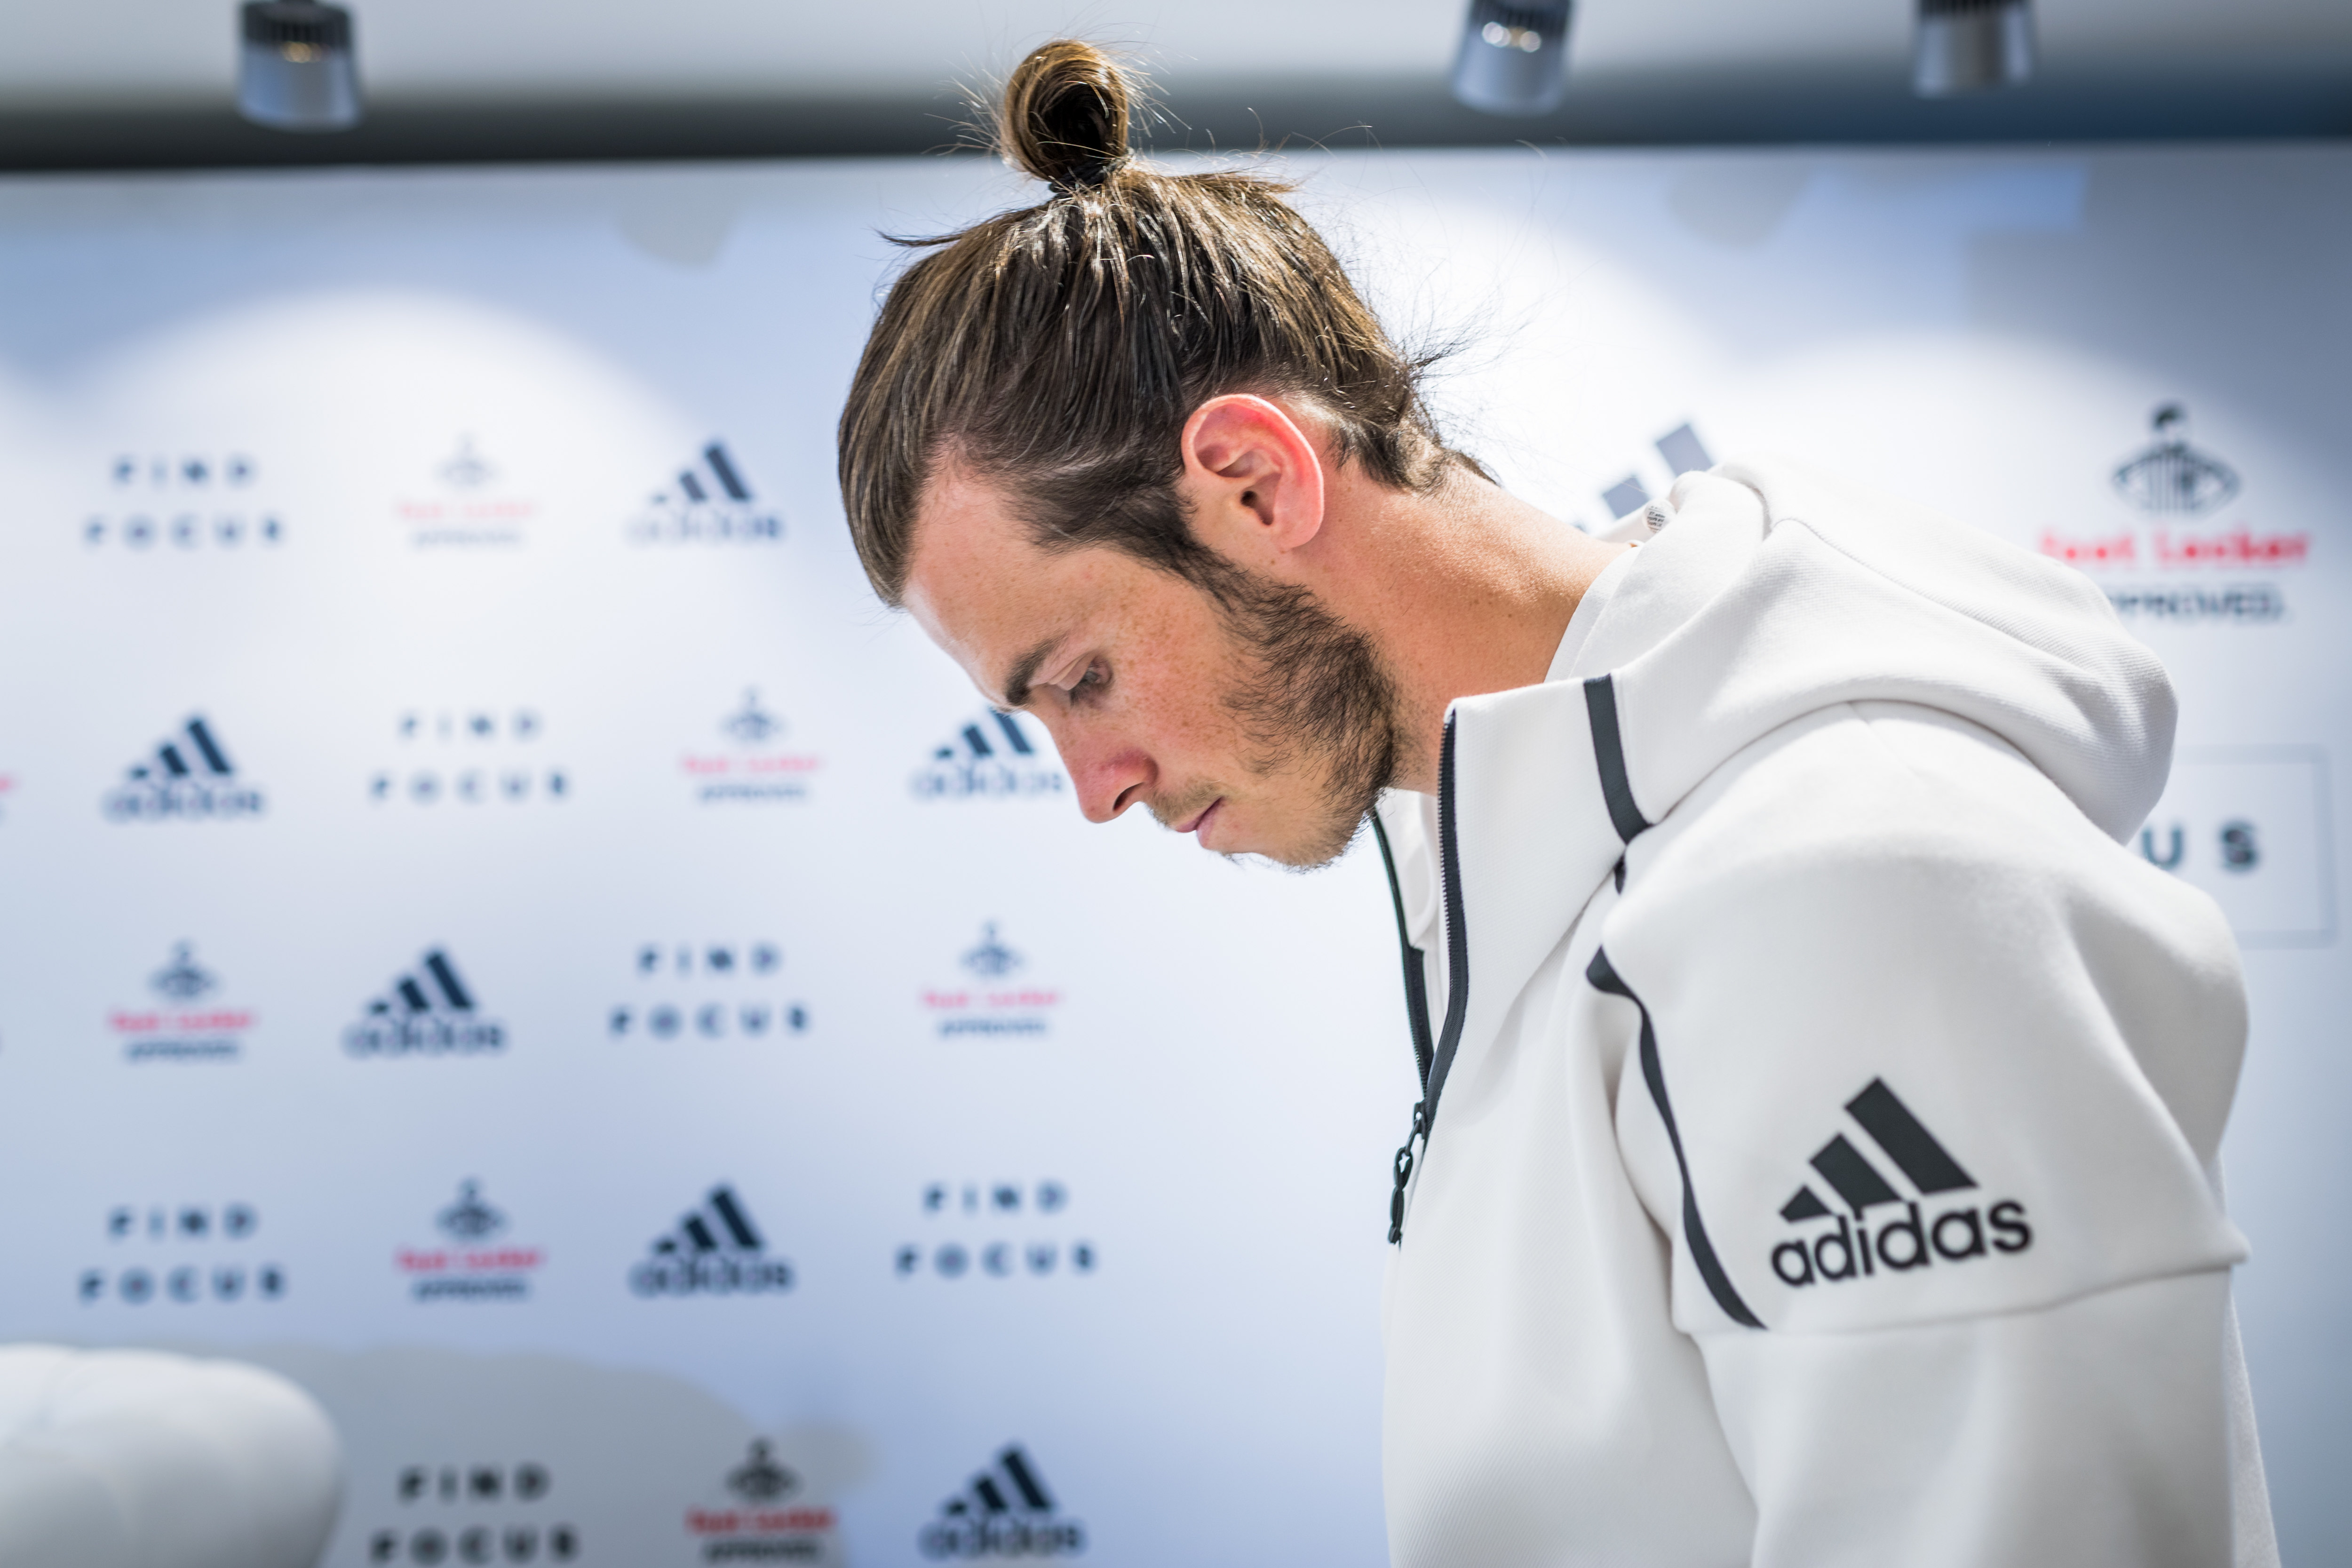 Presentación la sudadera de adidas athletics con Gareth Bale | Sneakers Magazine